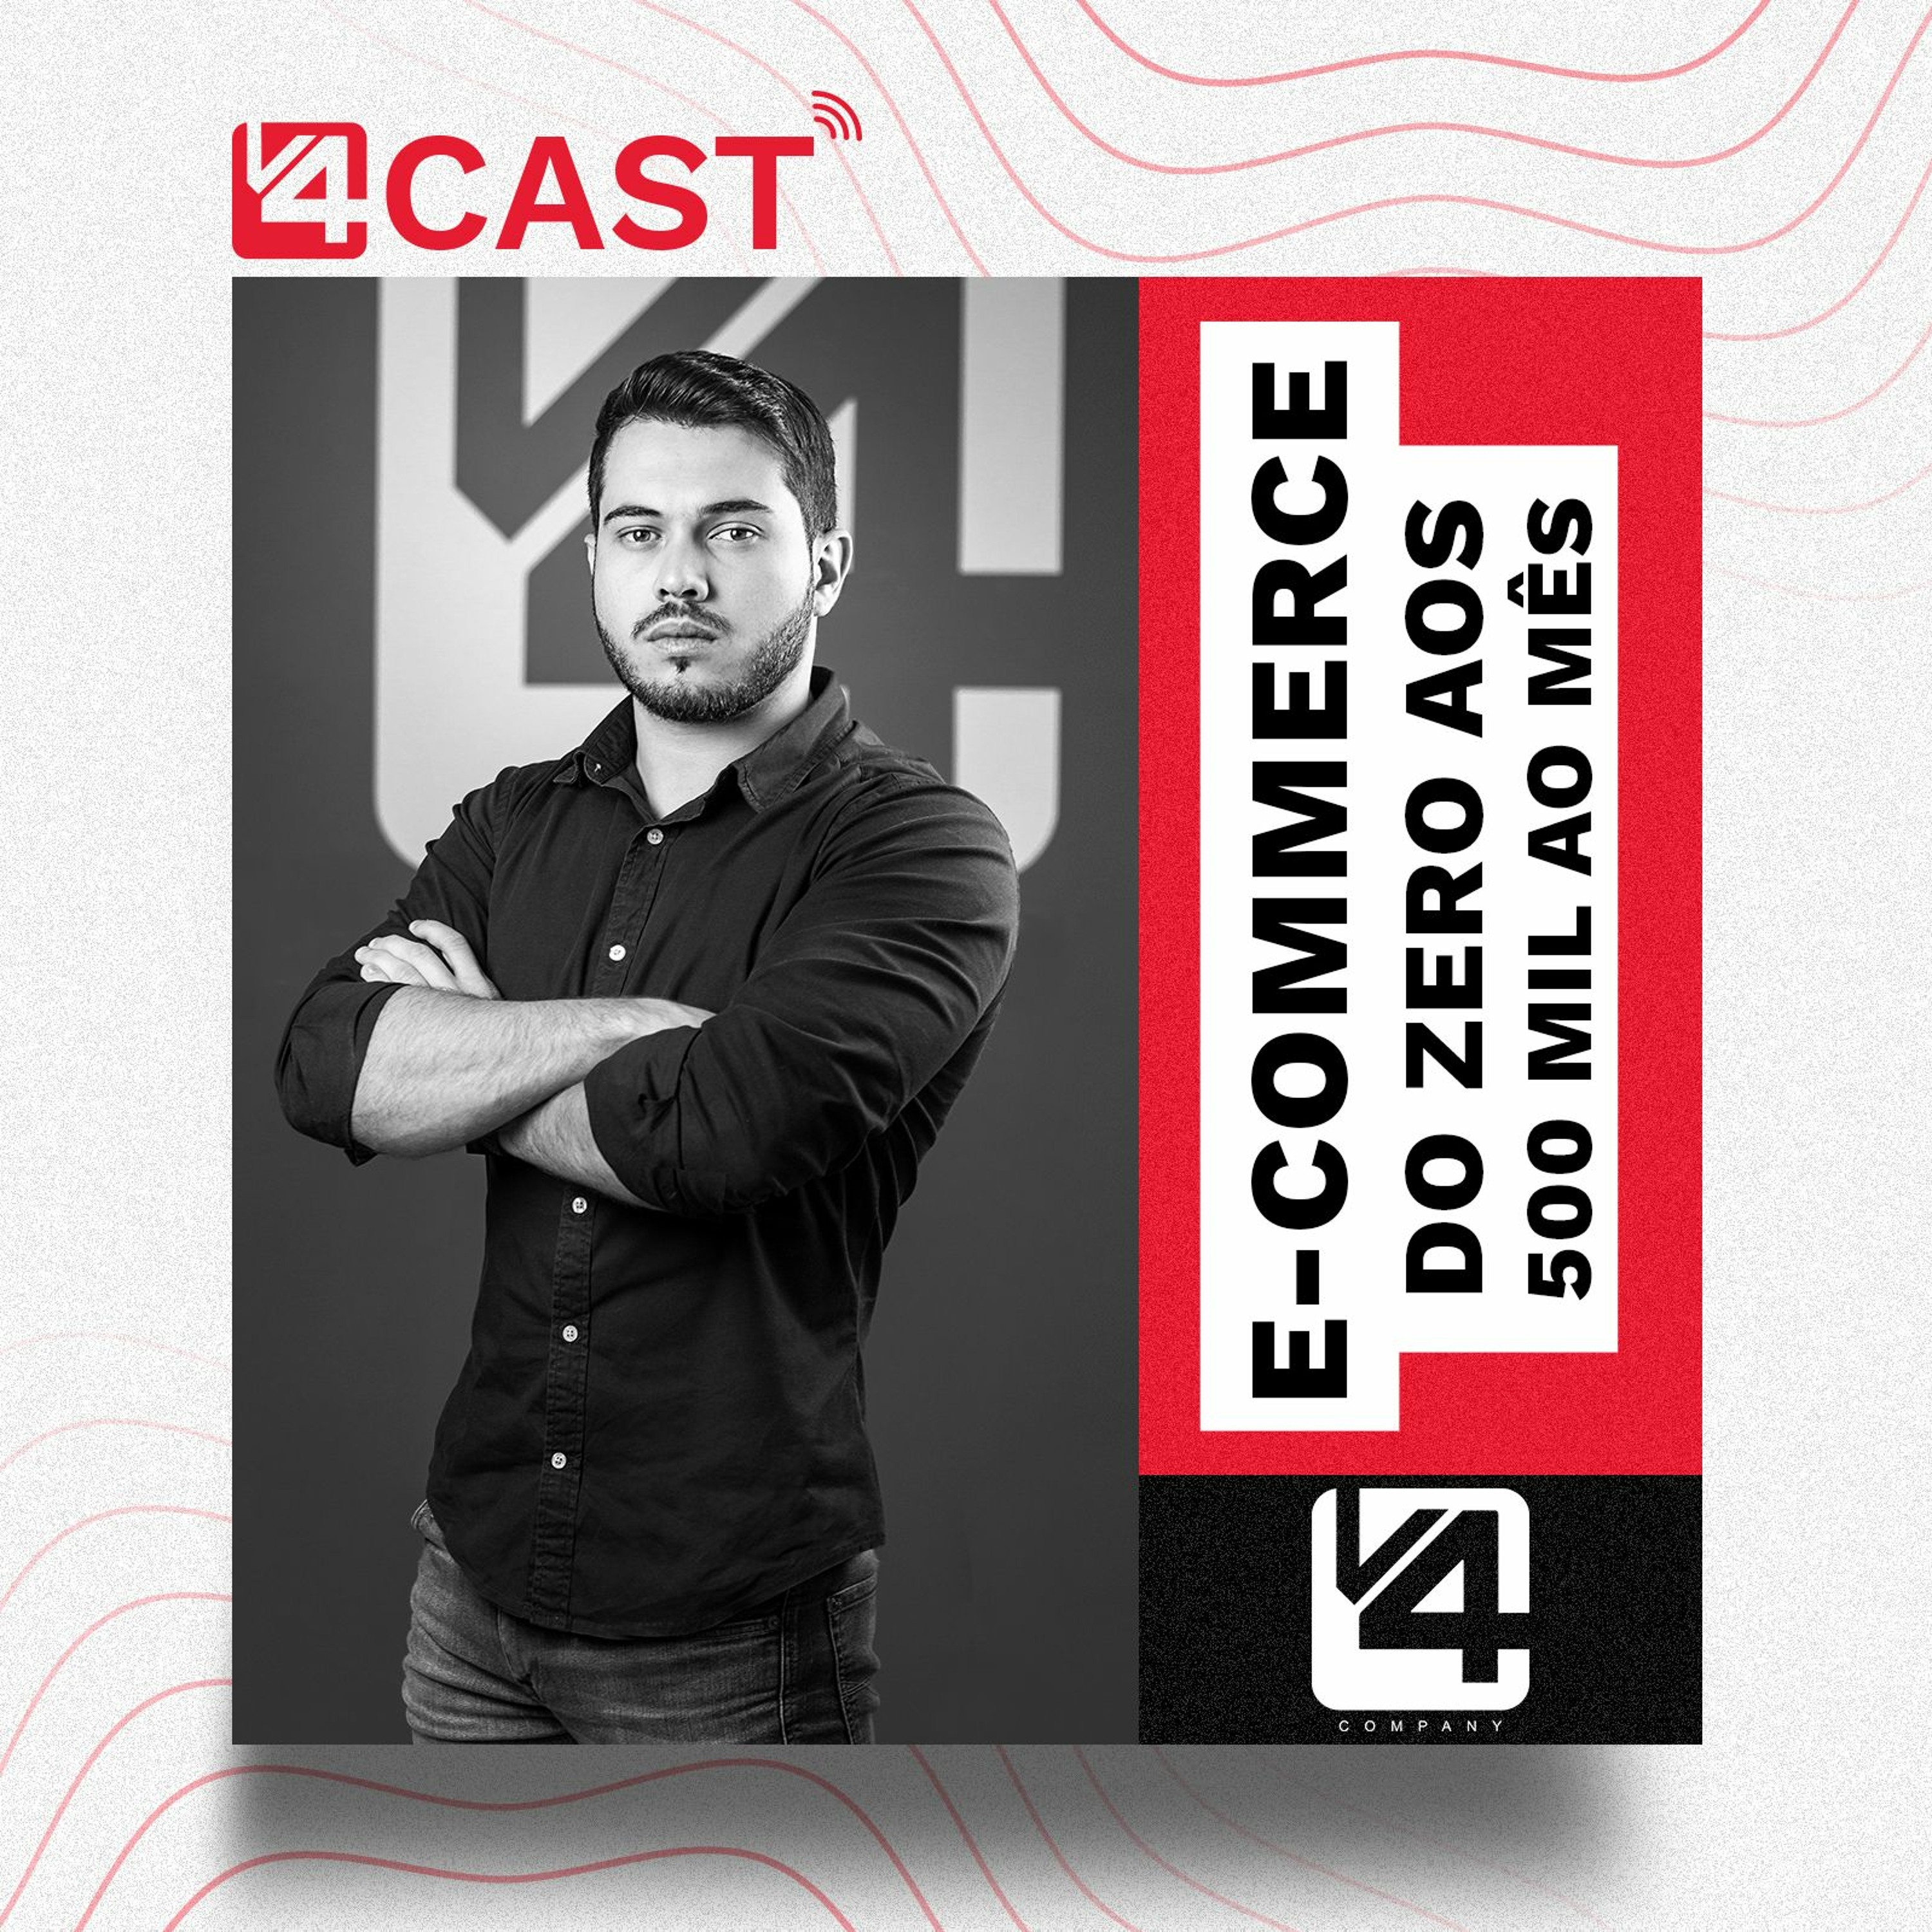 CASE: Como levar um e-commerce do 0 a 500 mil ao mês - Vinicius Colli | V4 Cast